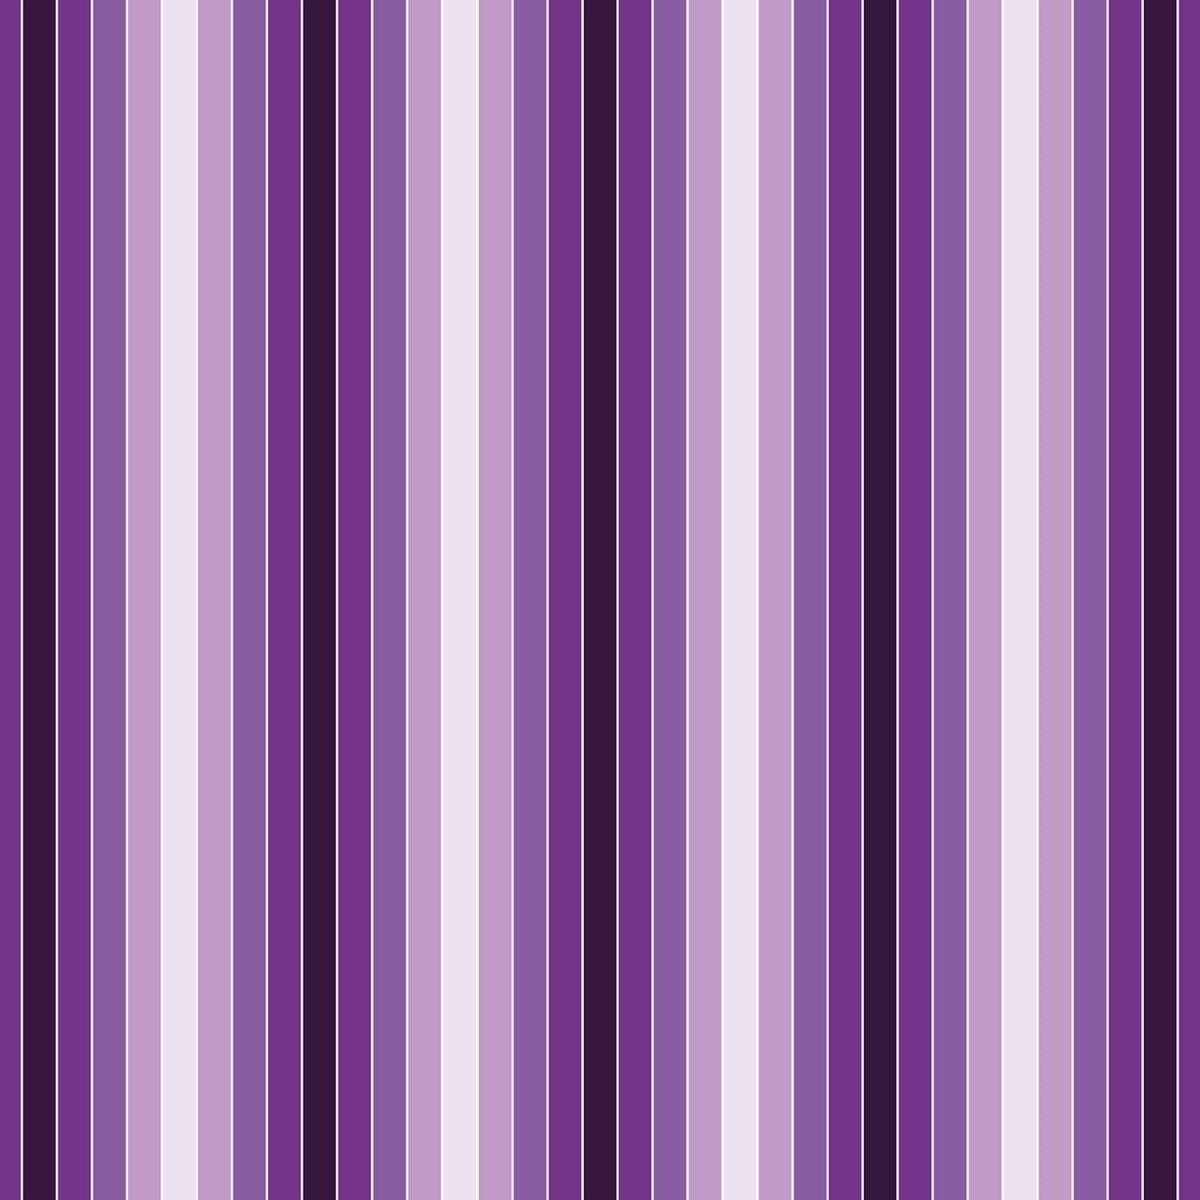 Beistelltisch Leuchtendes Violett Muster M0092 entdecken - Bild 2